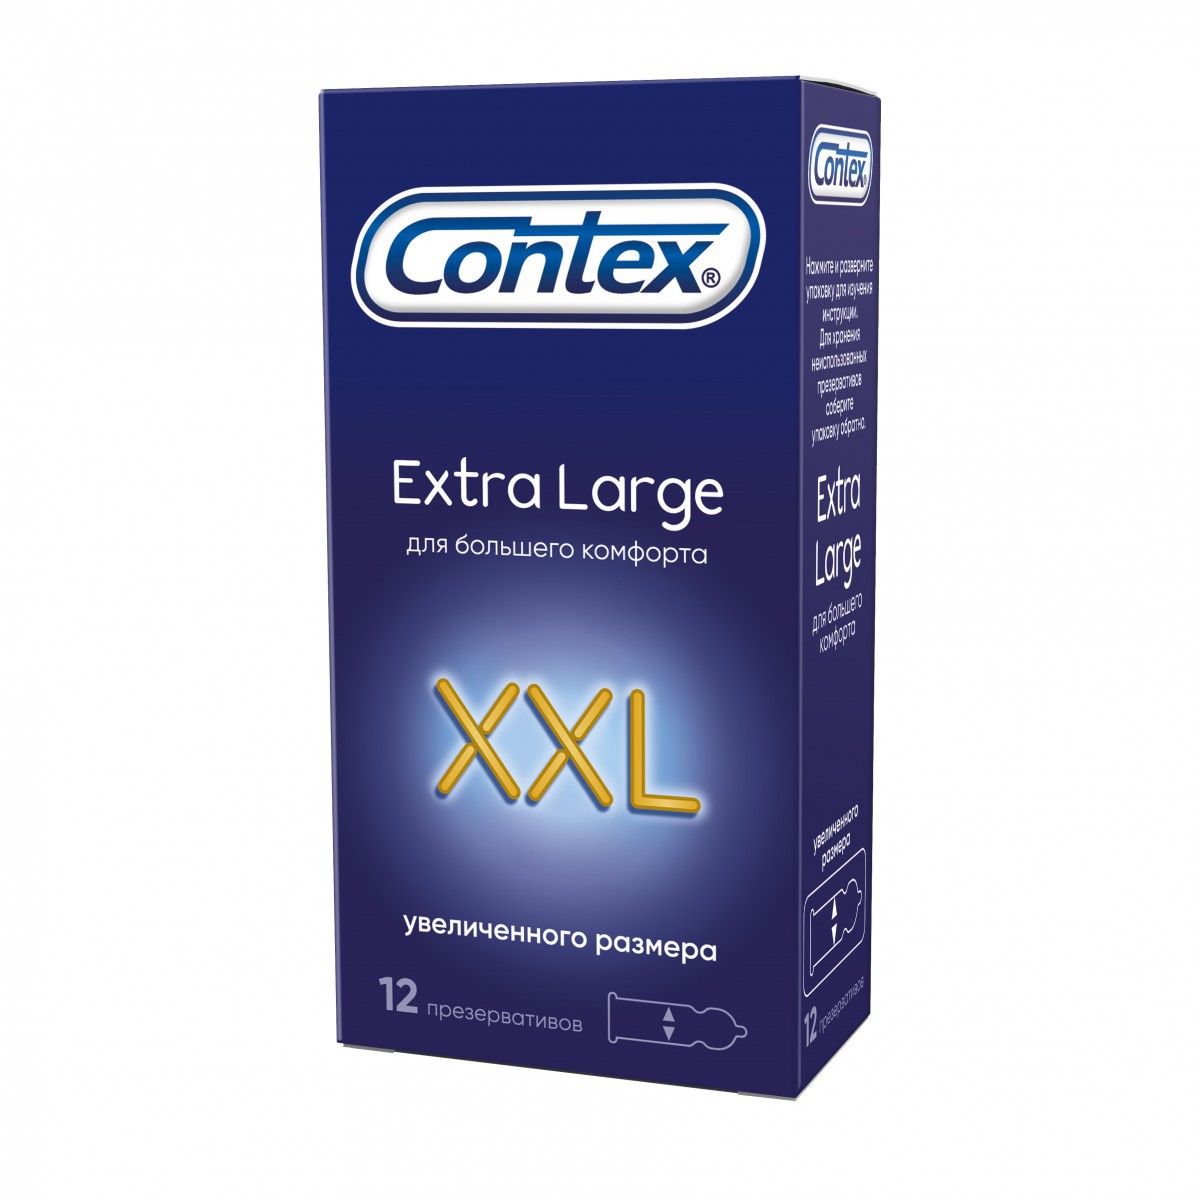 Презервативы CONTEX Extra Large XXL увеличенного размера N12 уп